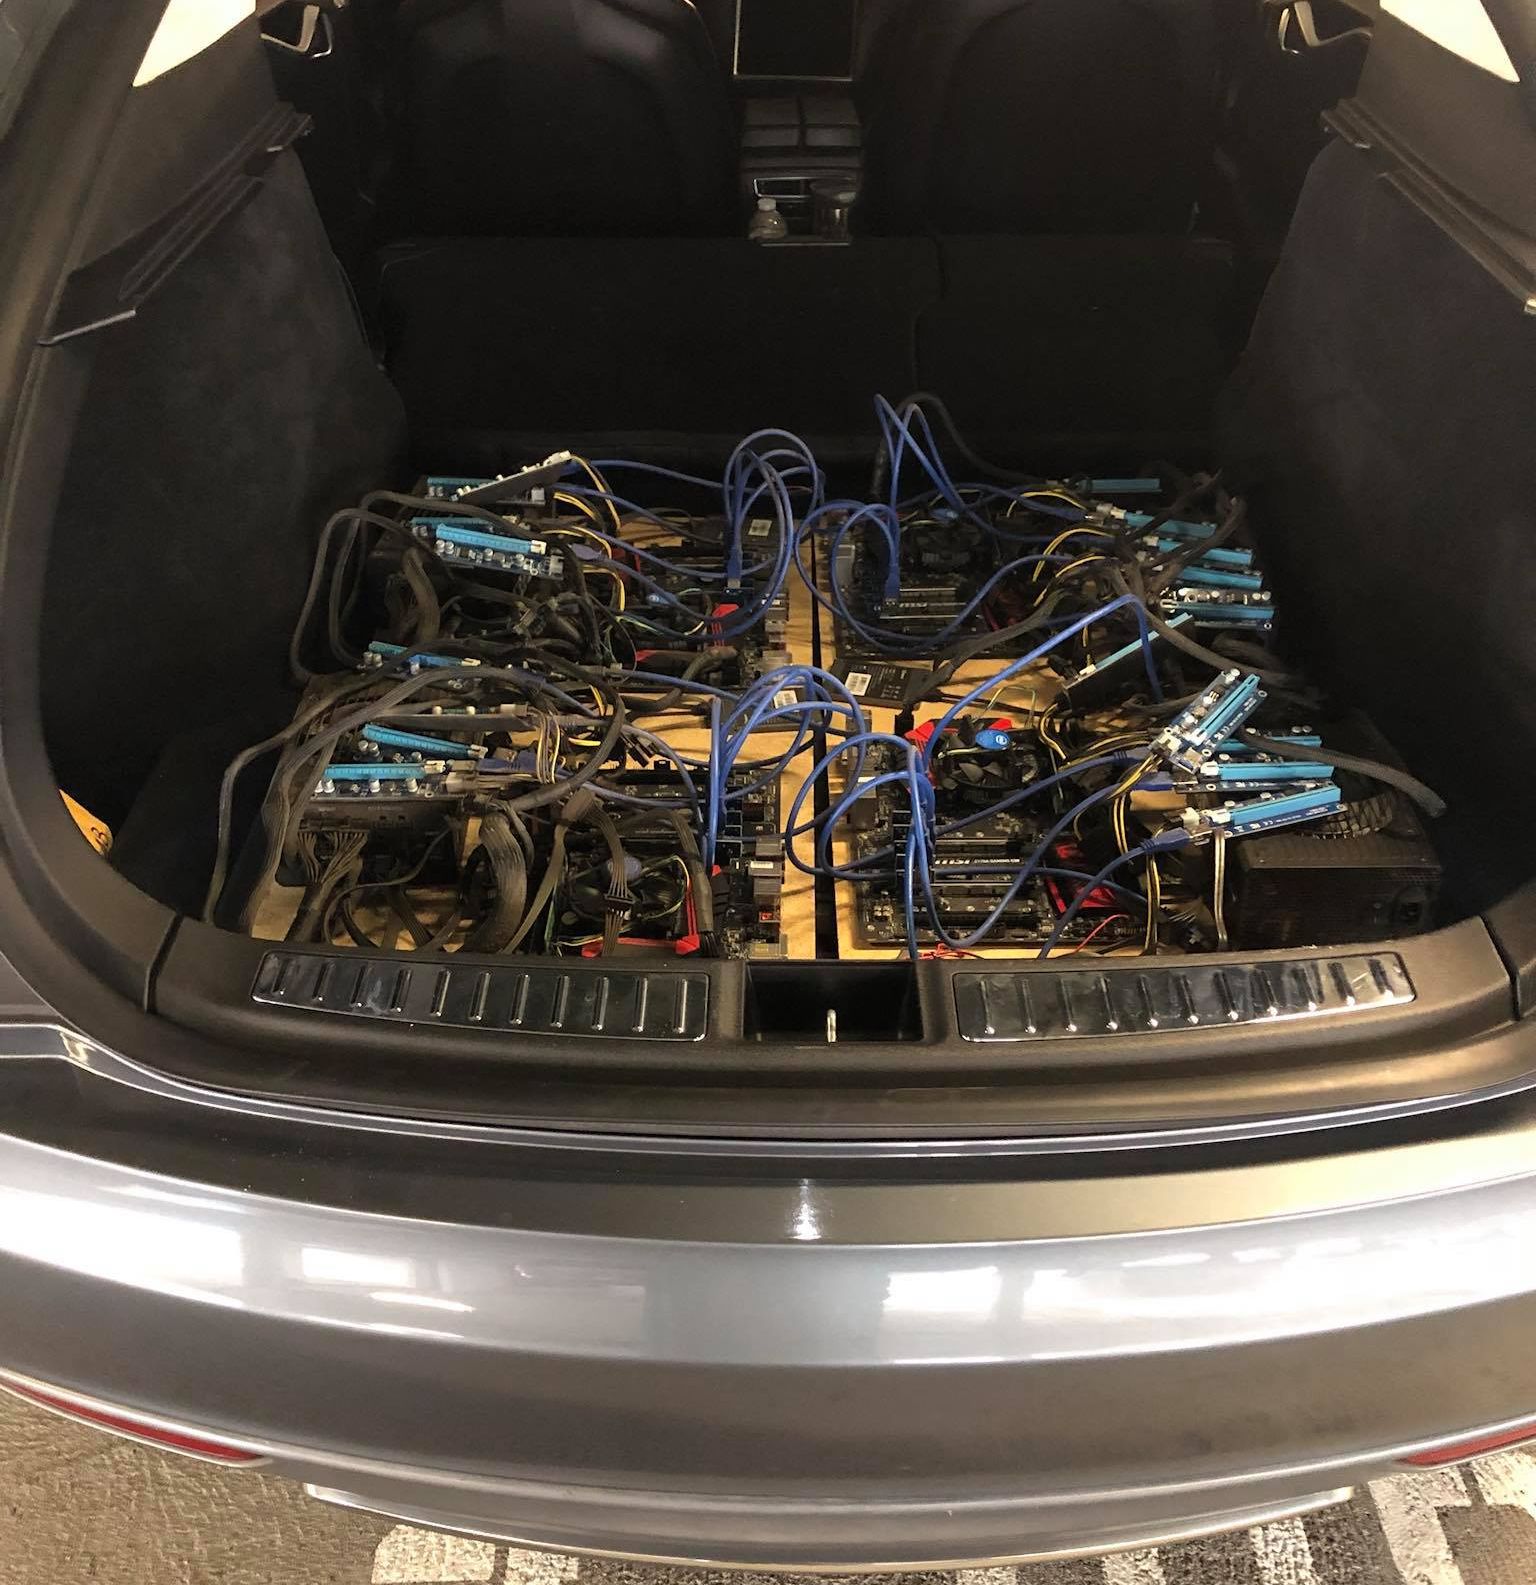 Tesla Model S ile bedava elektrik üzerinden Bitcoin madenciliği